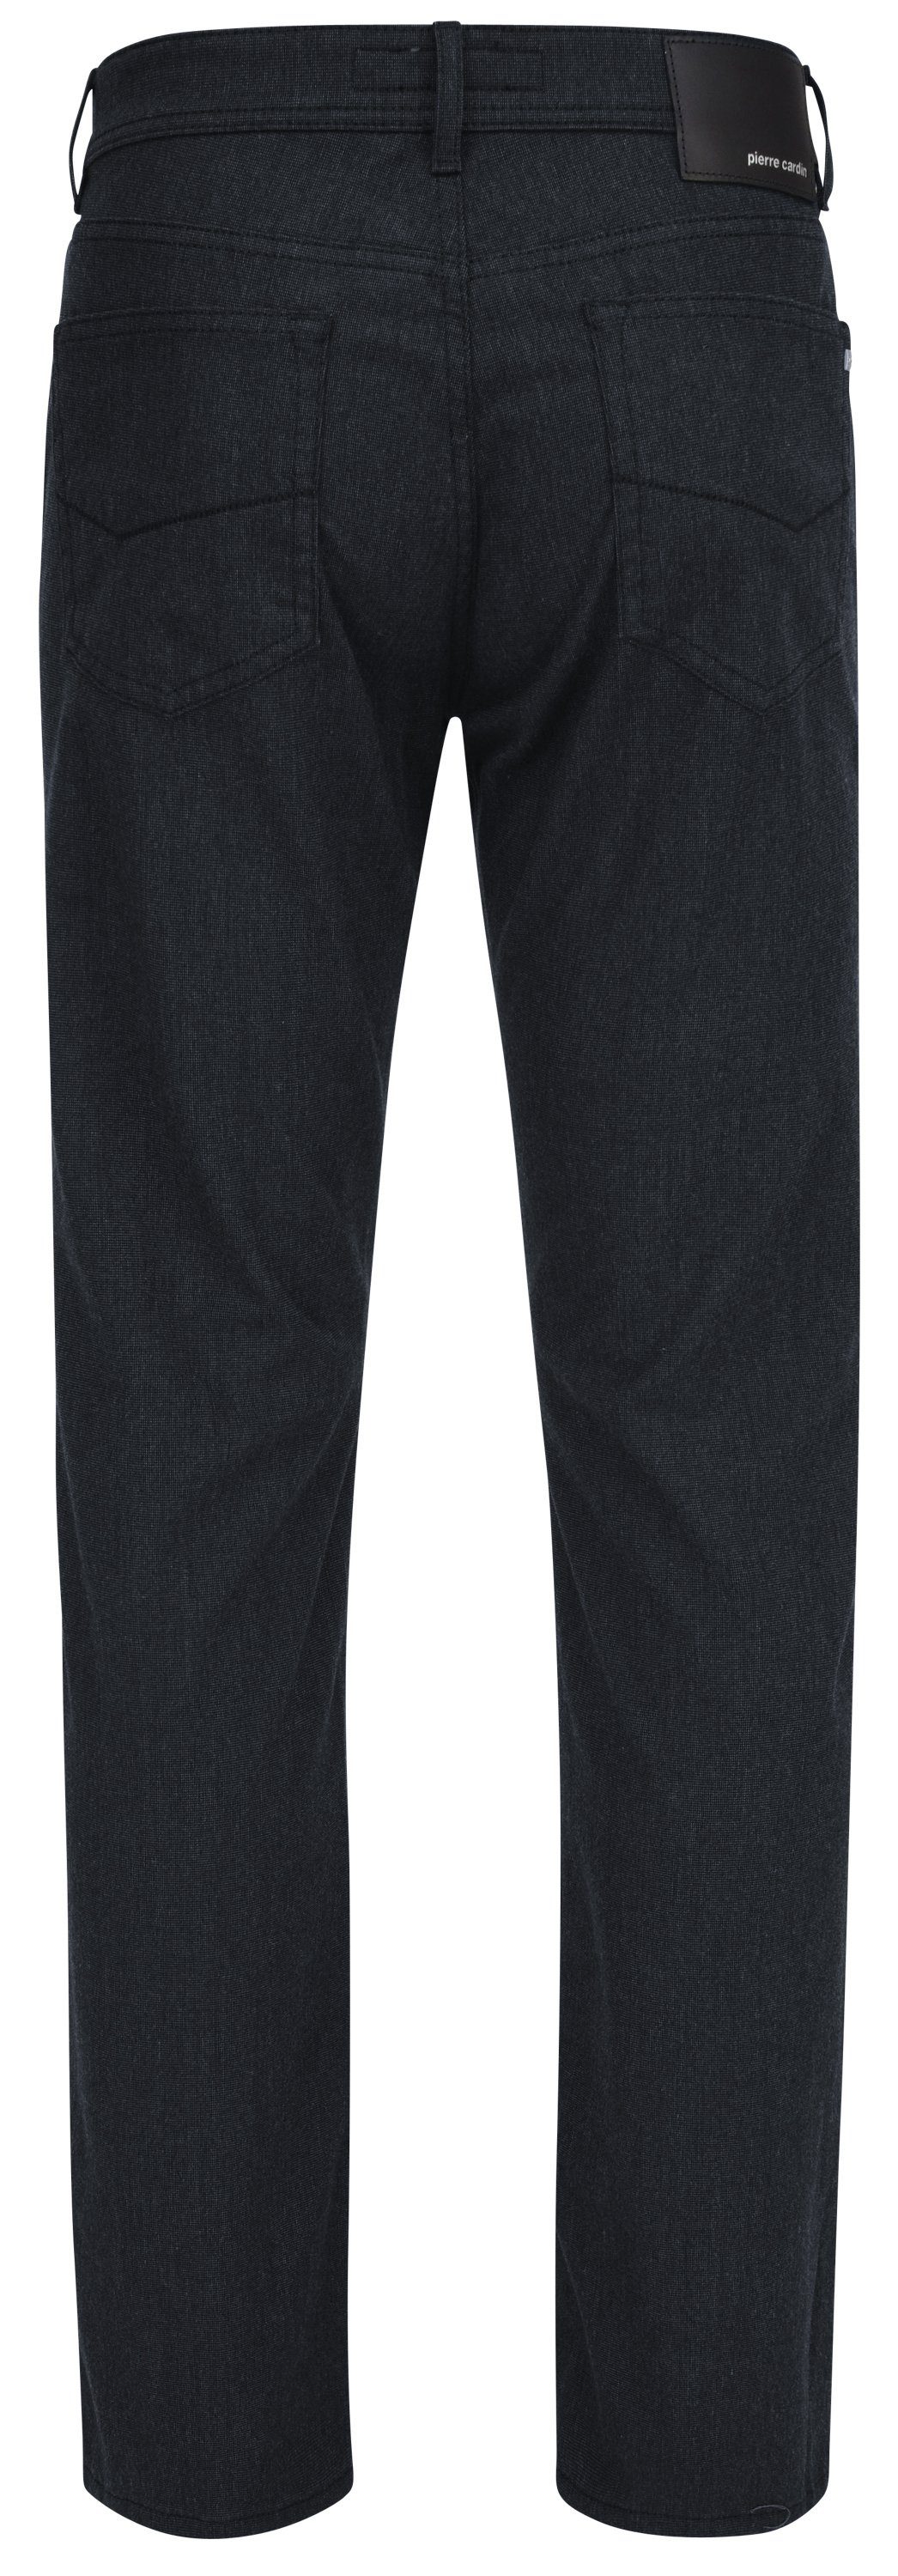 Pierre Cardin 5-Pocket-Jeans PIERRE CARDIN LYON - 4715.69 marine VOYAGE 3091